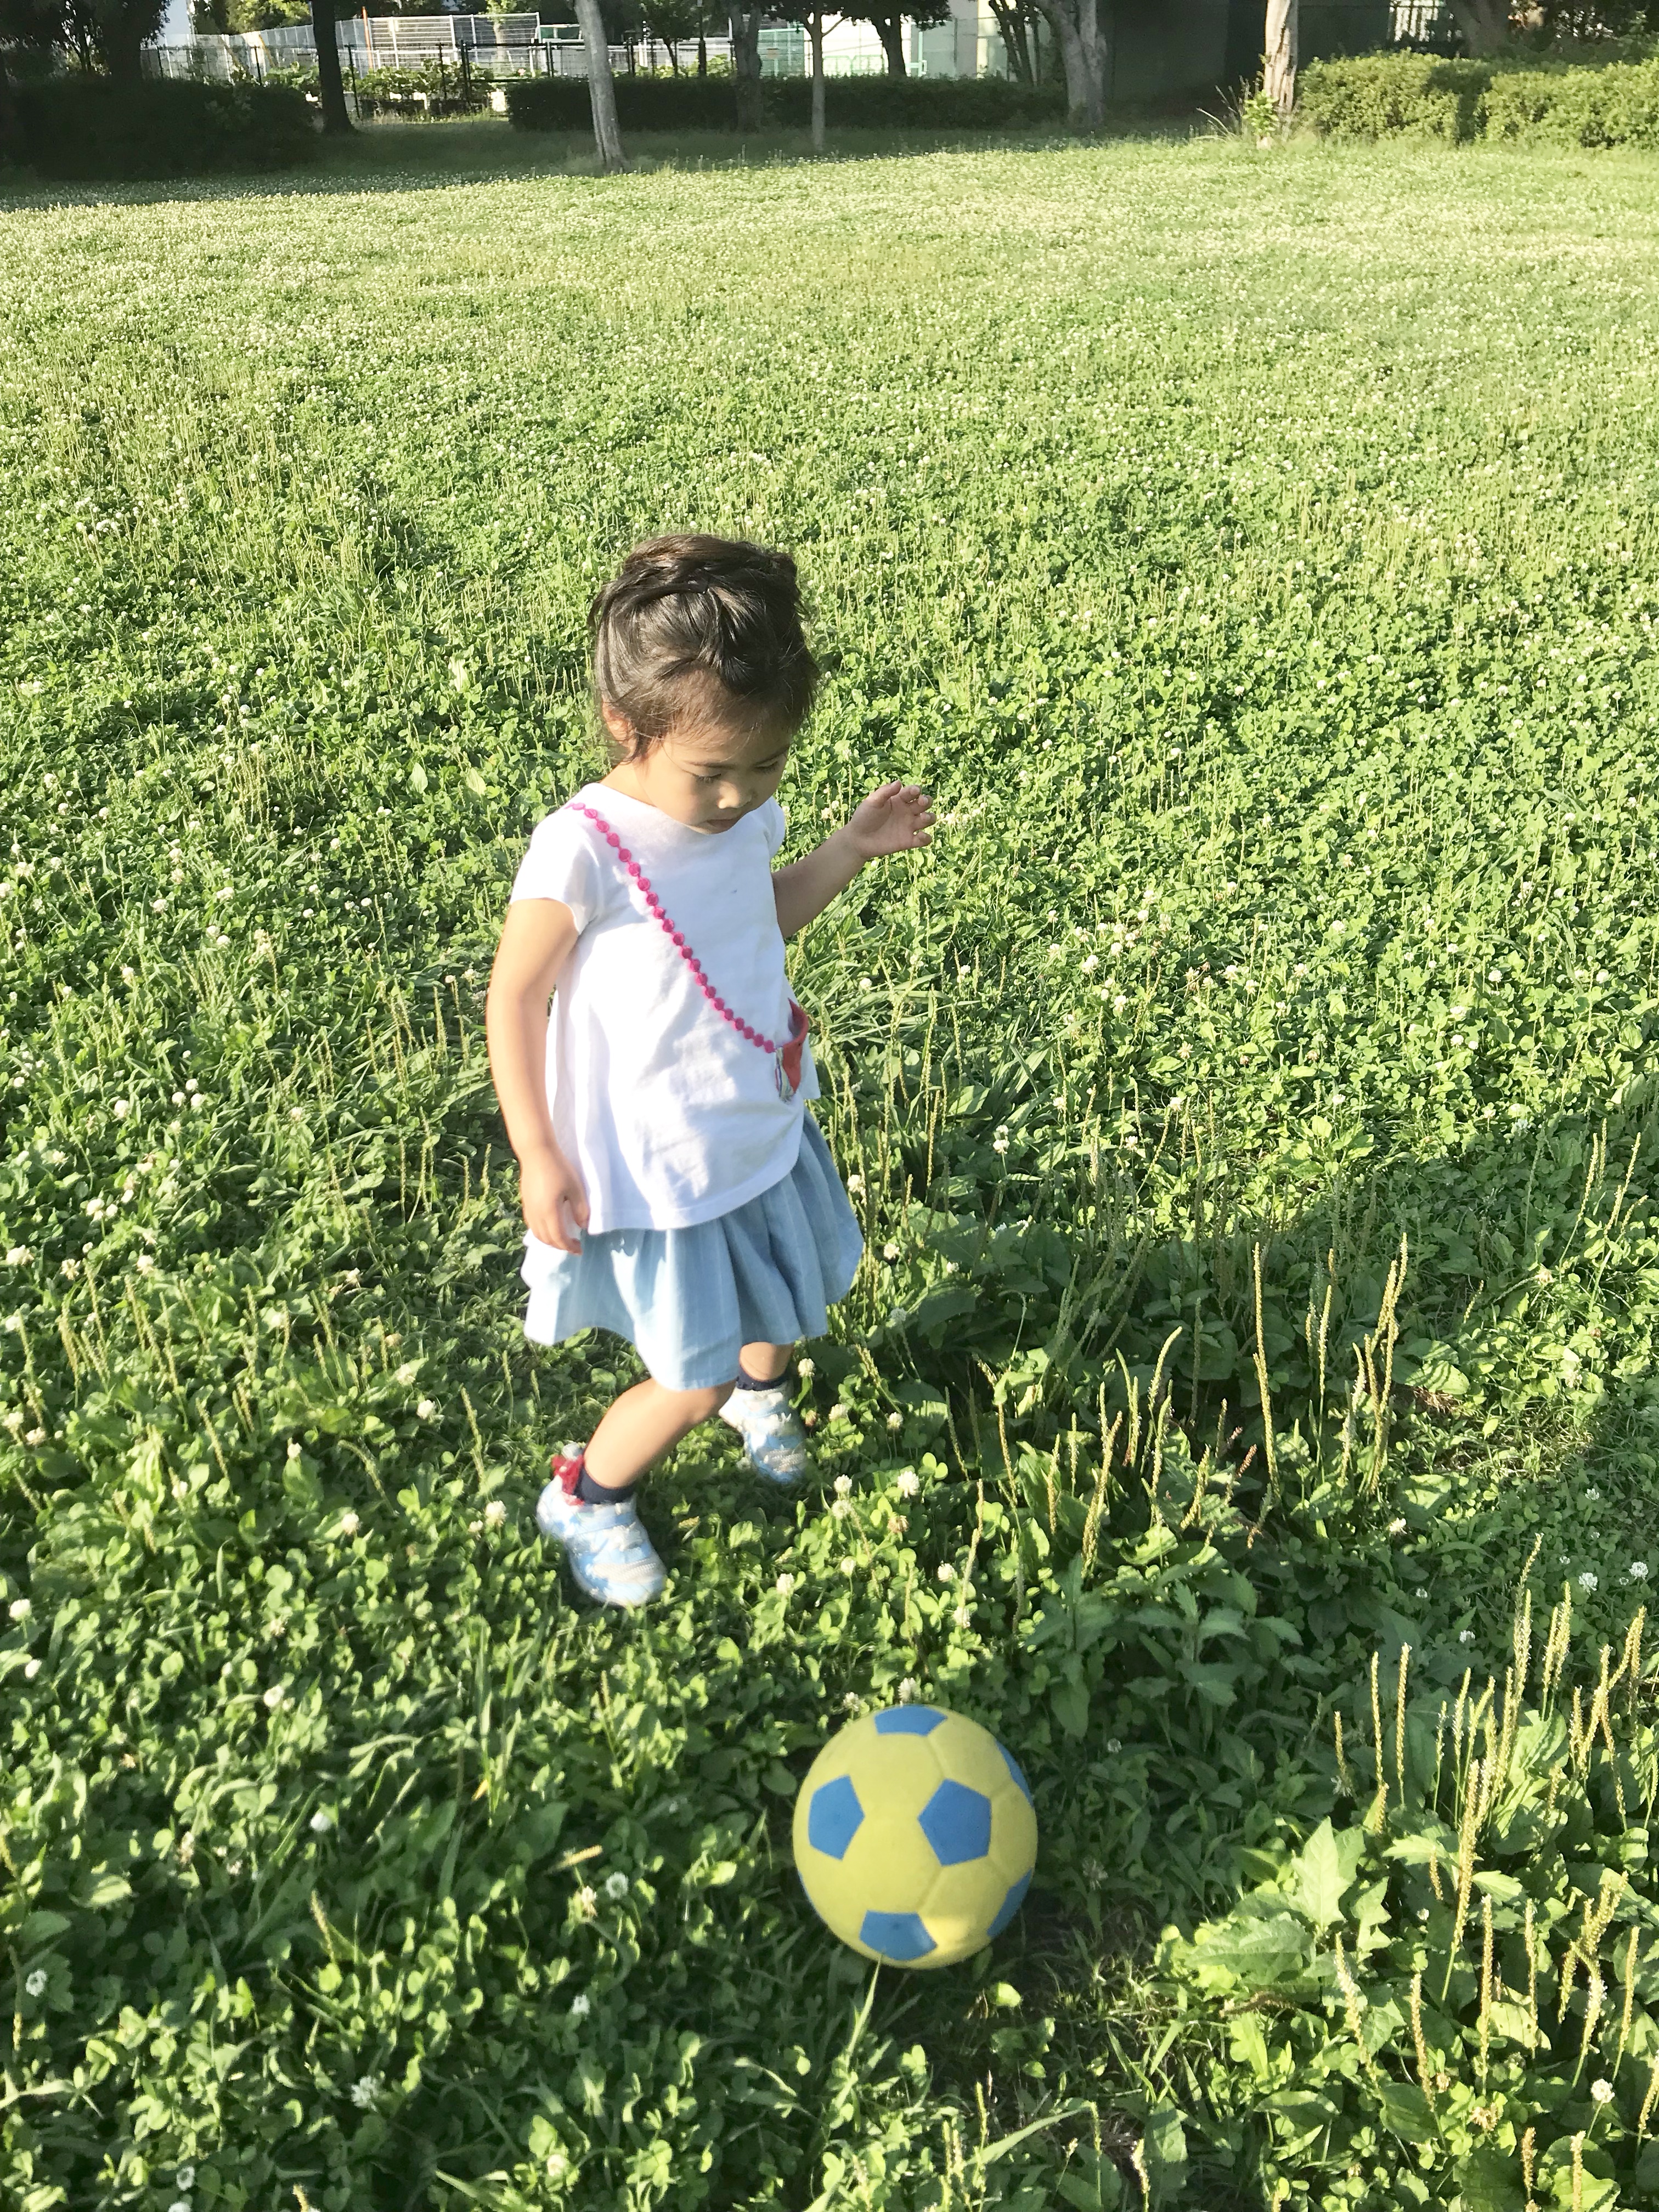 ボール遊びは禁止の最近の公園事情 遊び方を考えるのも アソビ かな サッカー人 柴田卓 のヘアケア美容師 ライフプランニングblog